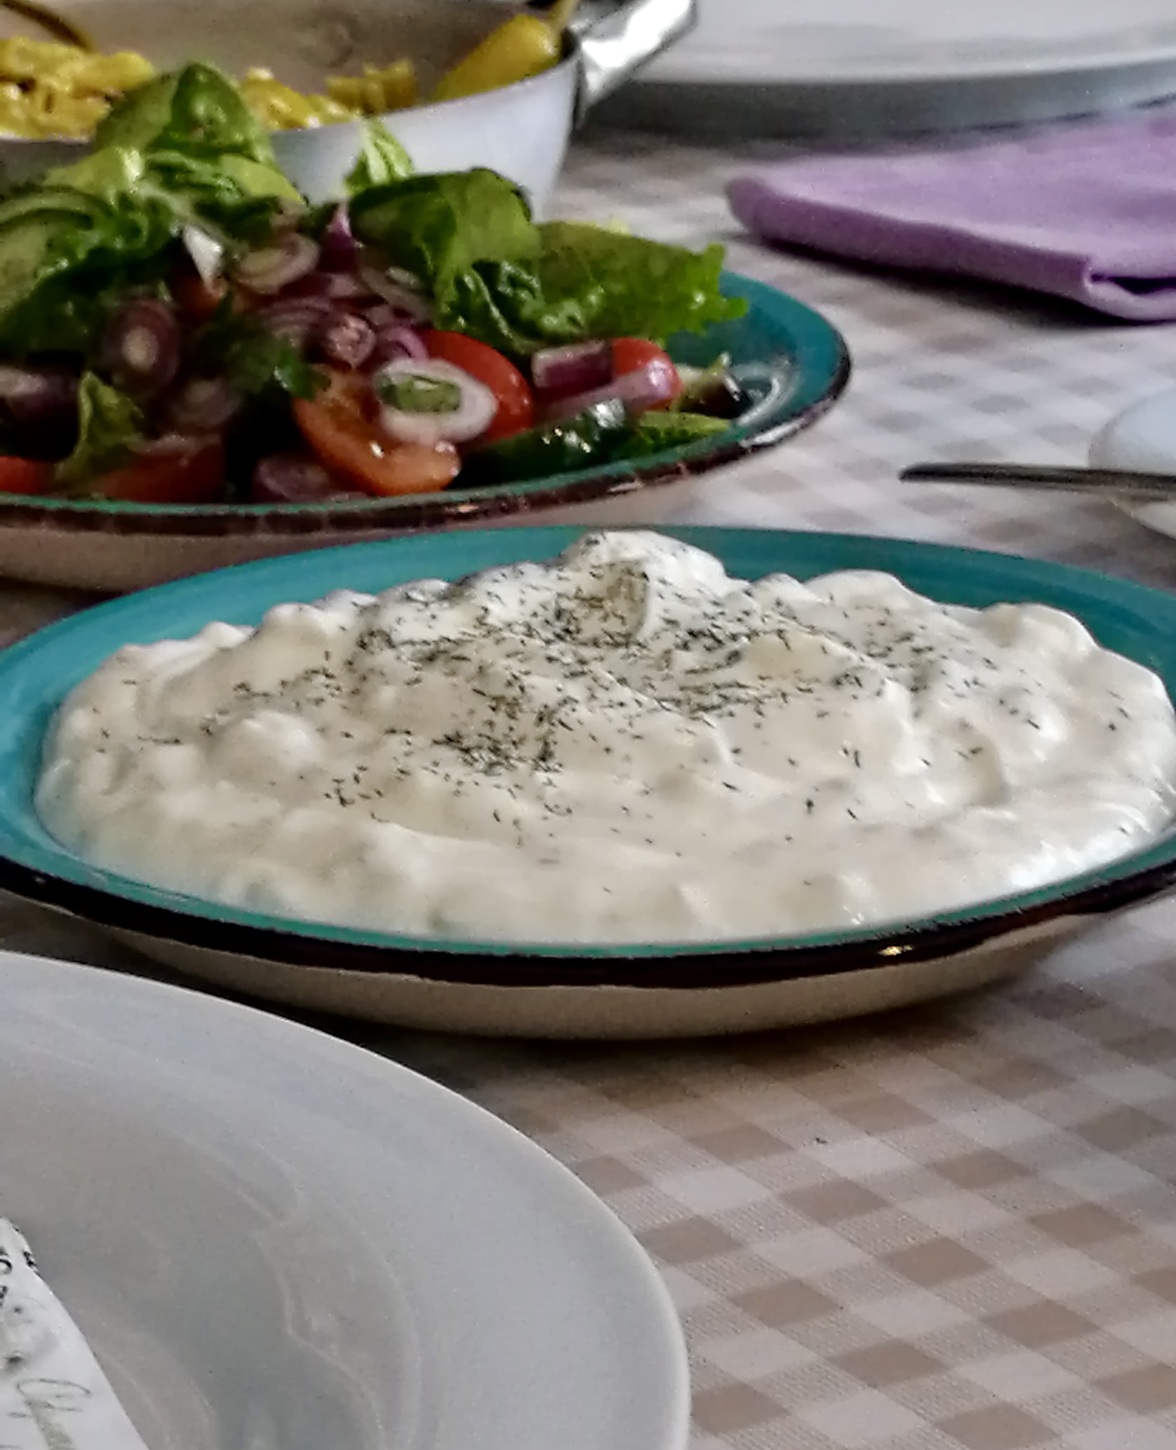 Teller mit weißer Creme und Kräutern, im Hintergrund ein bunter Salat, auf karierter Tischdecke ihn braun.